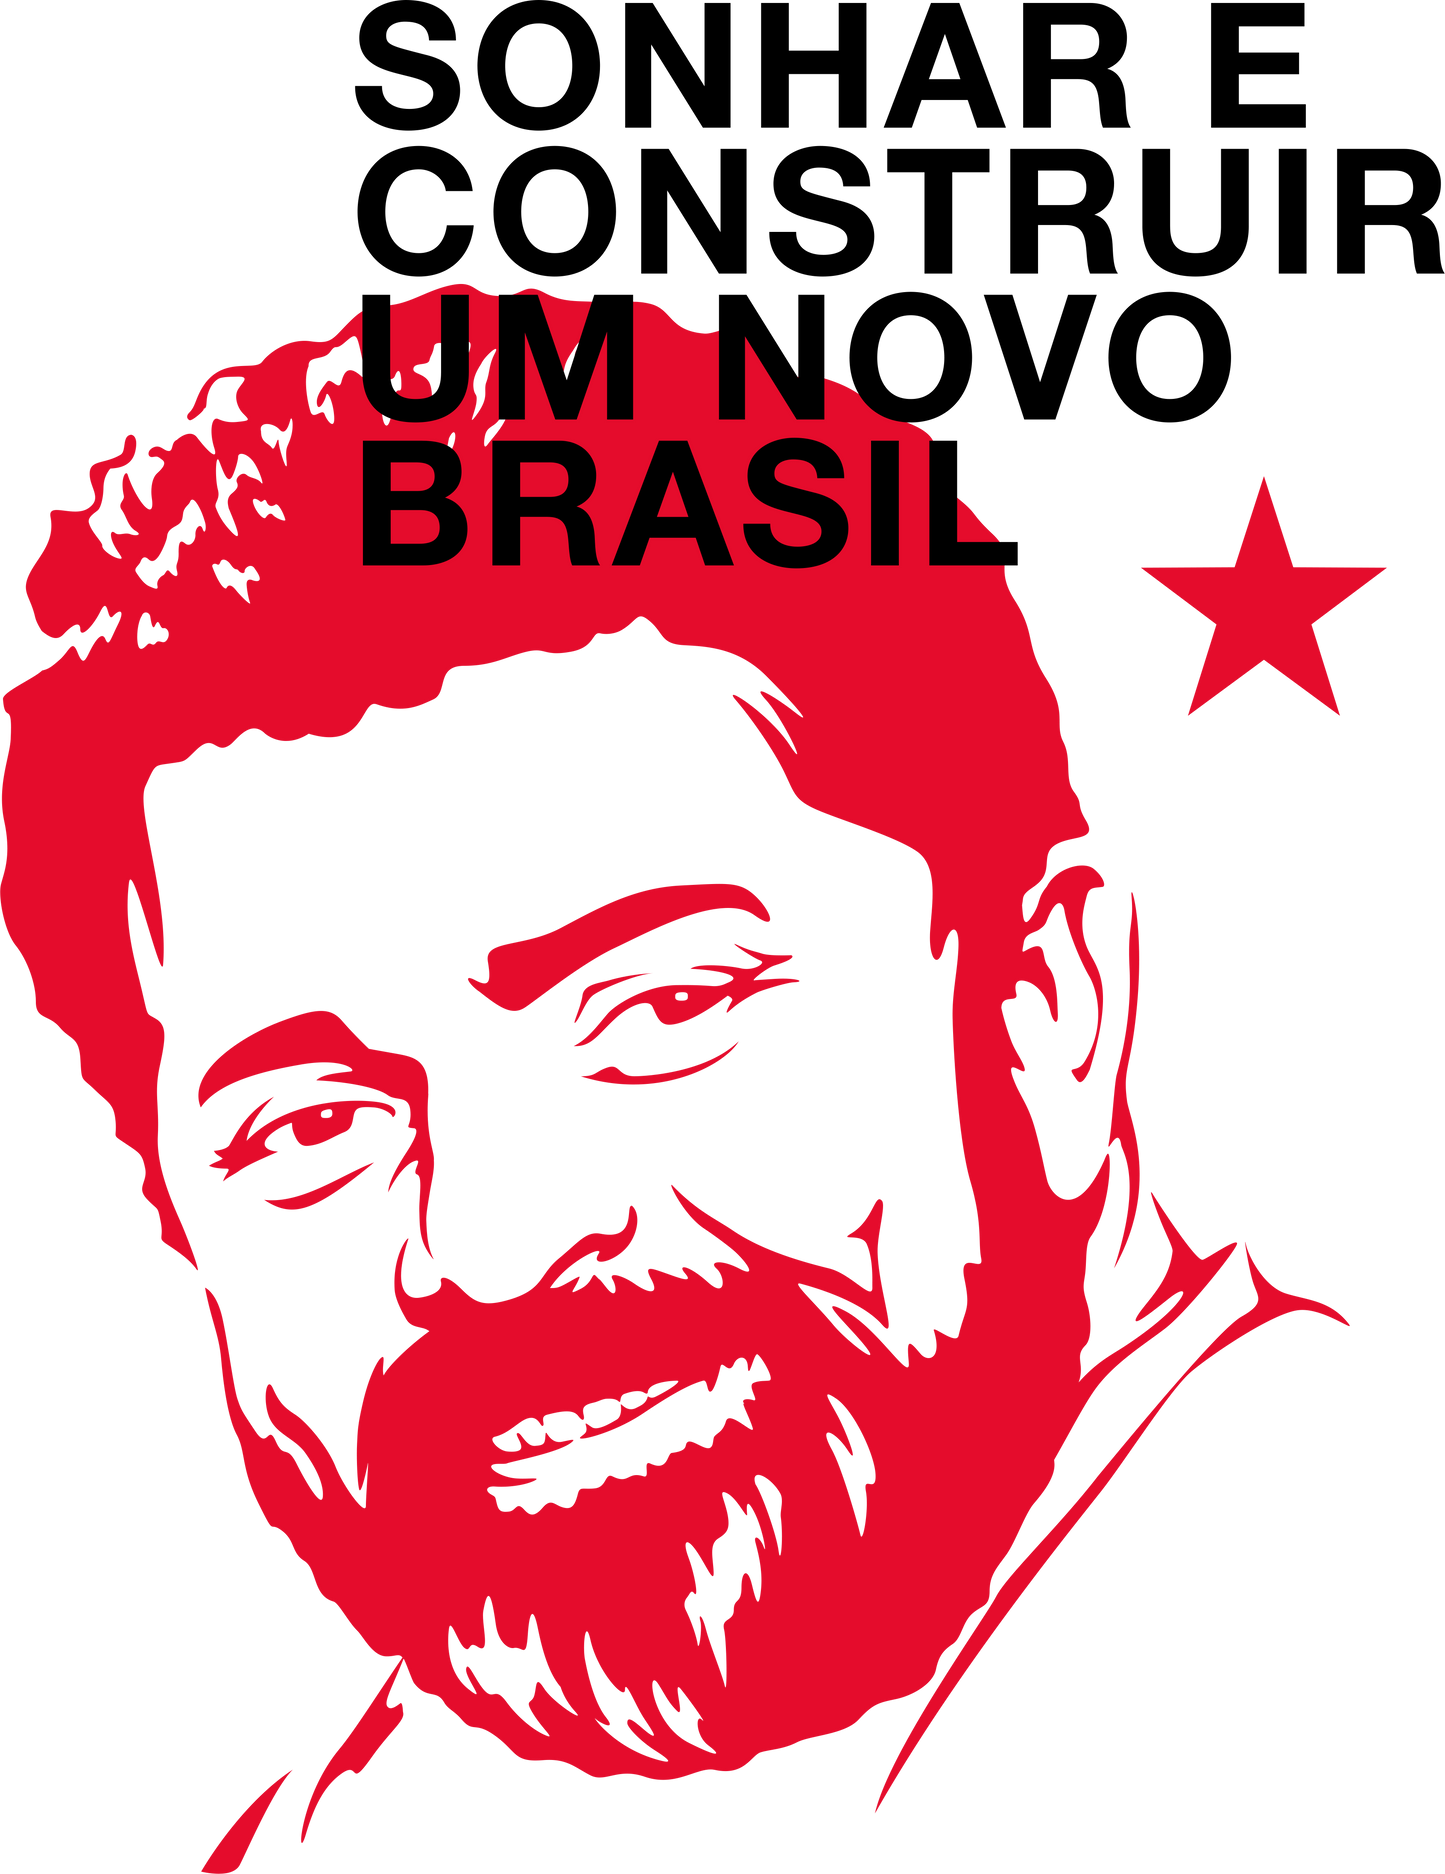 Body Infantil Lula Sonhar e Construir um novo Brasil